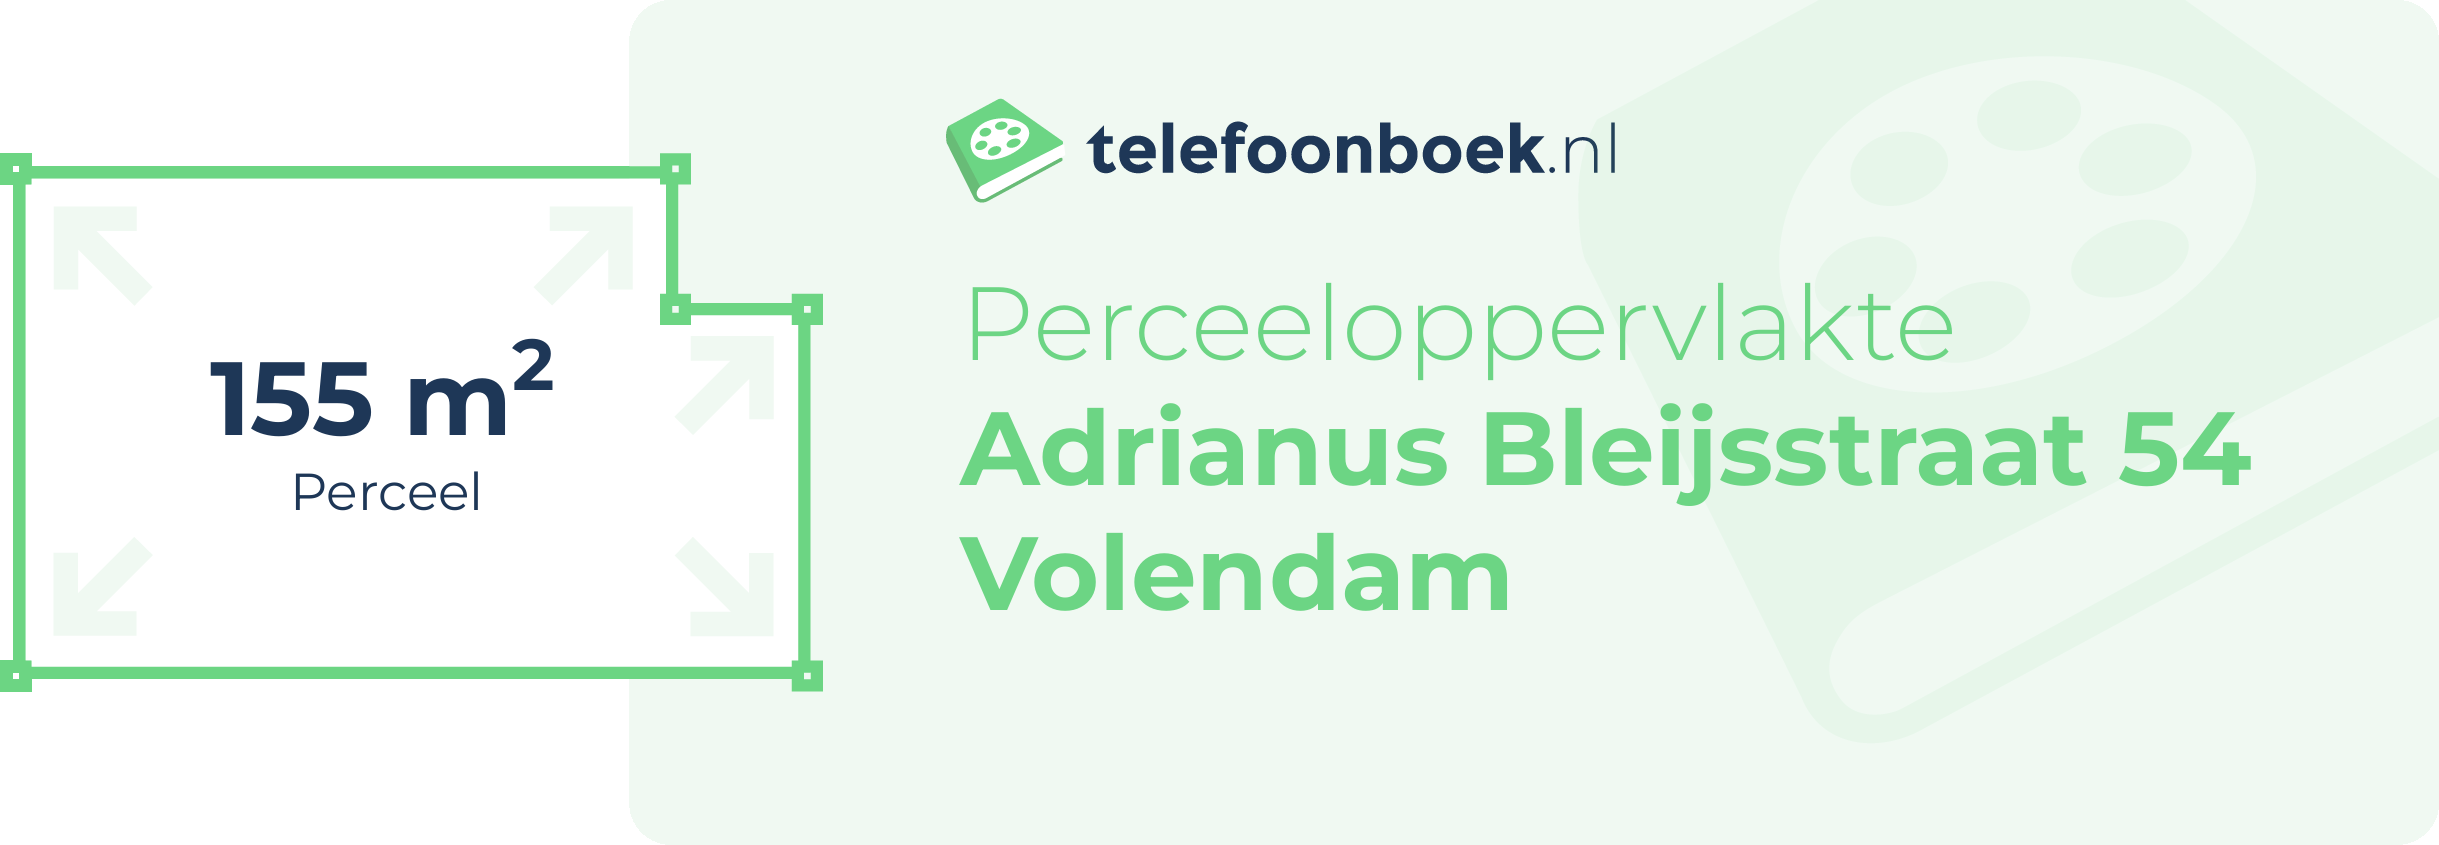 Perceeloppervlakte Adrianus Bleijsstraat 54 Volendam